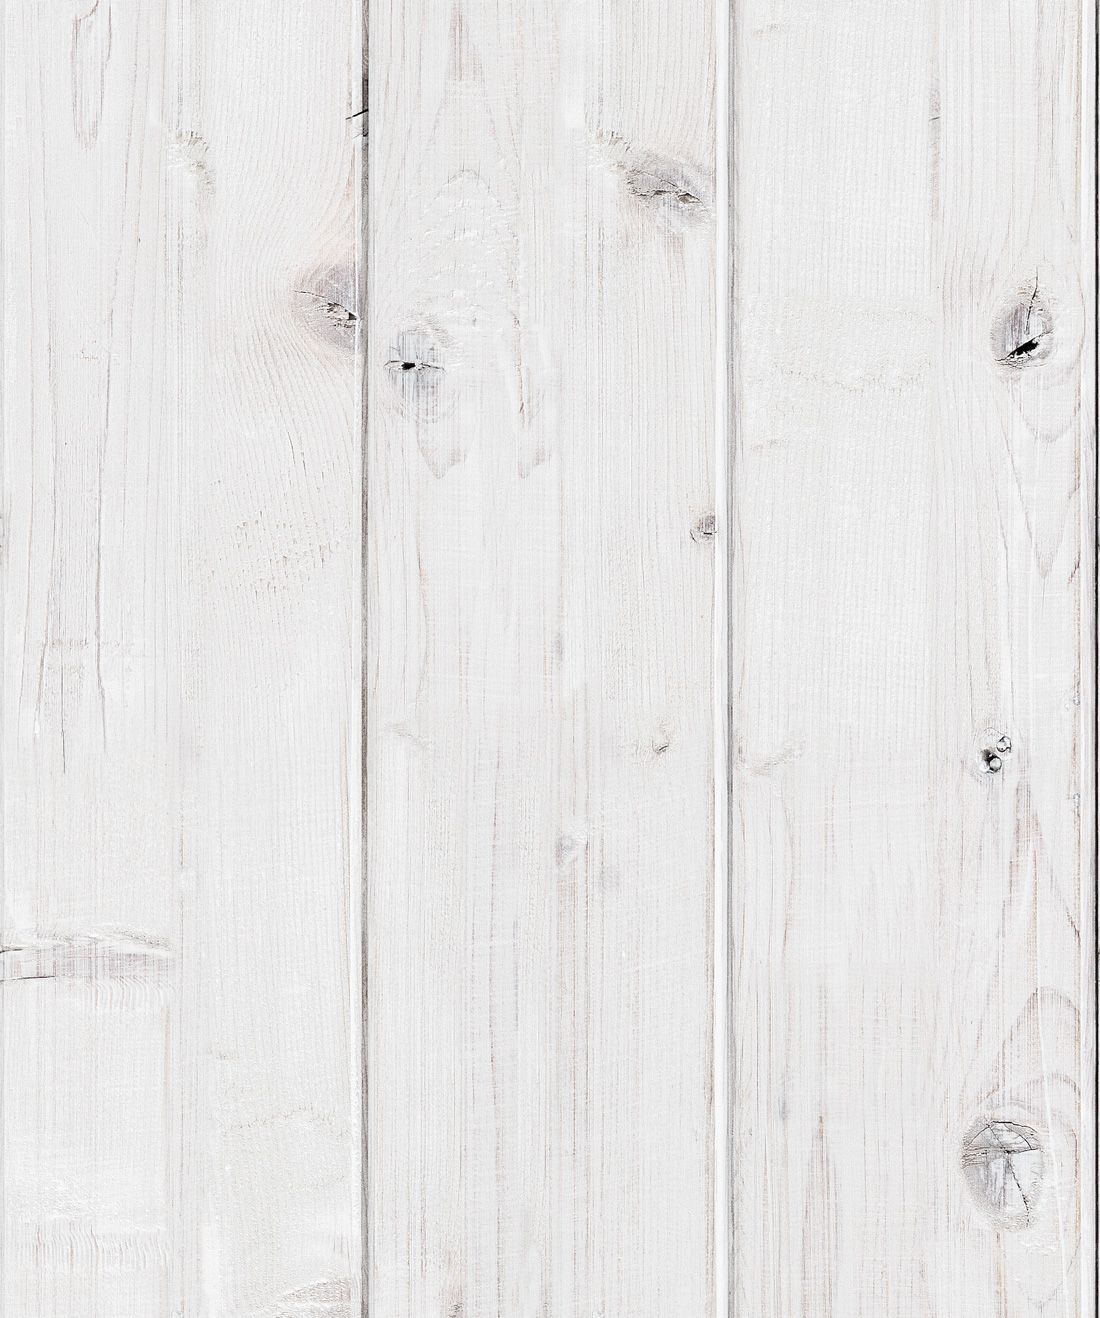 دانلود رایگان تکسچر و بافت چوب سفید برای چاپ کاغذ دیواری 